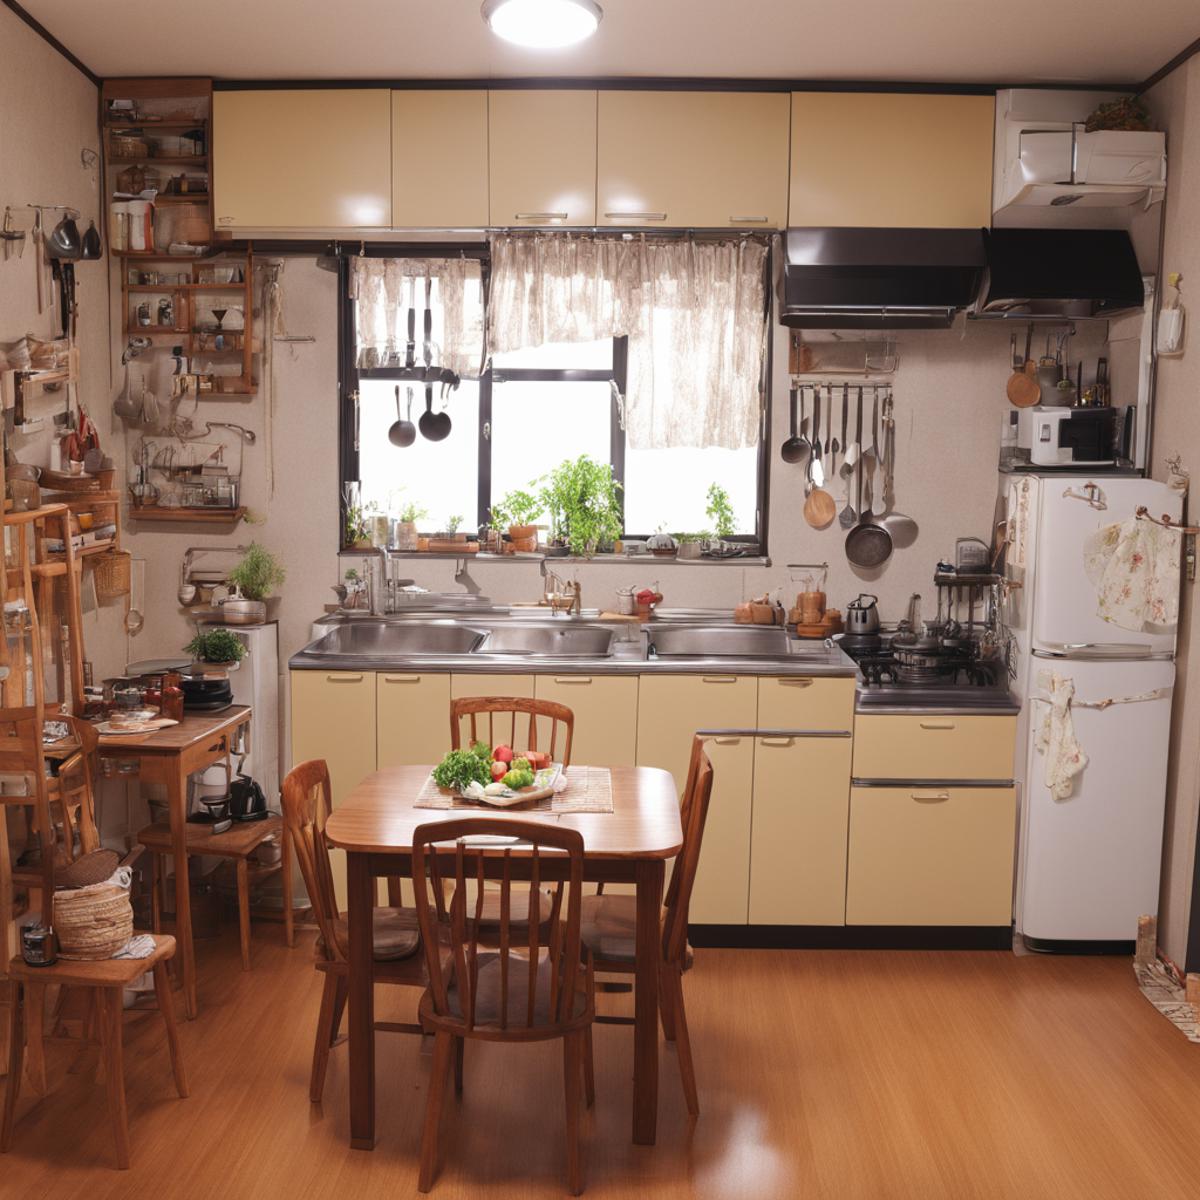 日本の住宅の台所 Kitchens in Japanese Housing Complexes SDXL image by swingwings